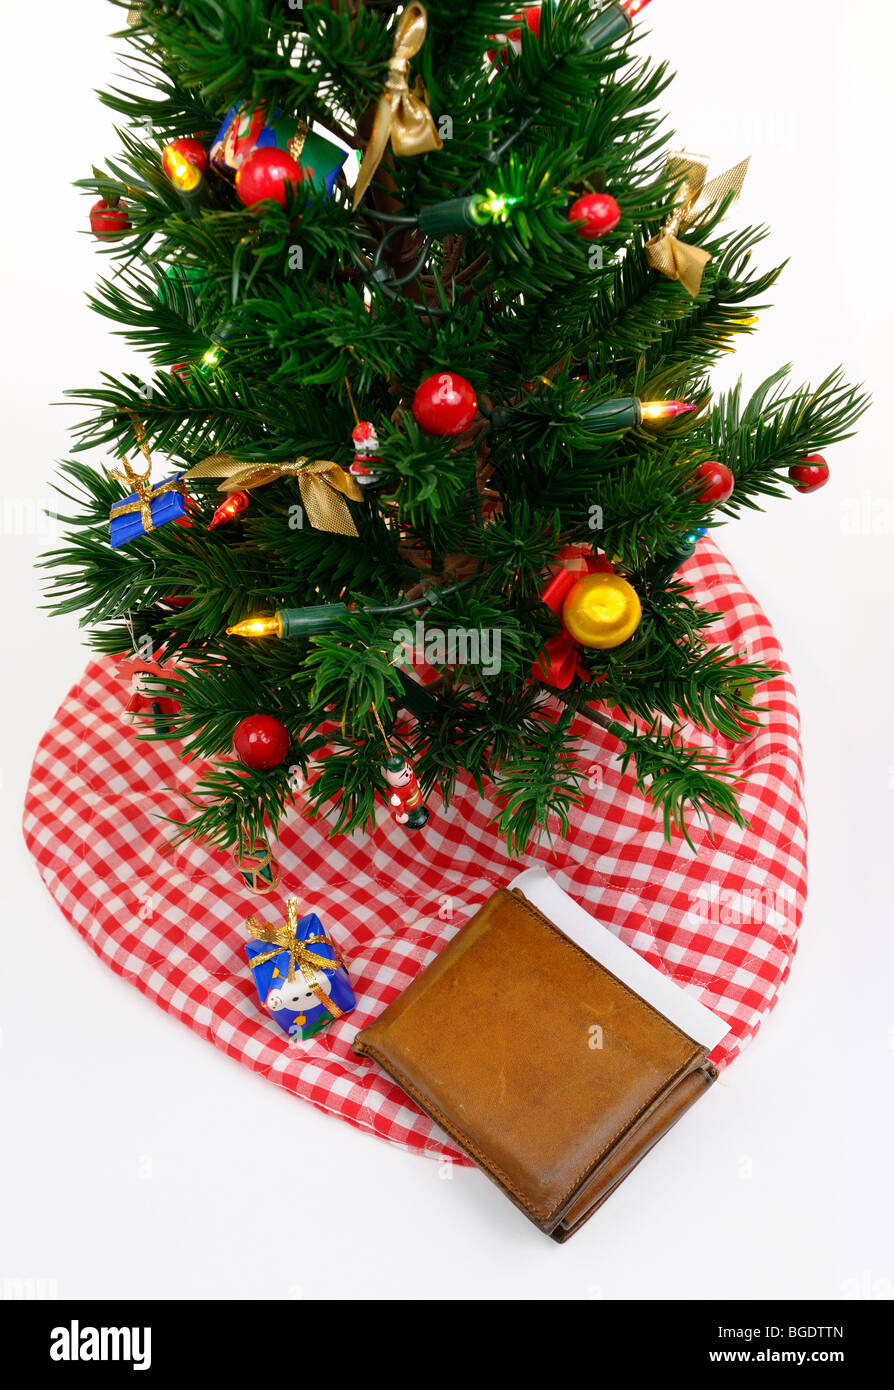 Abgenutzte alte Geldbörse mit Kreditkarten und Scheck unter dem geschmückten Weihnachtsbaum mit einem kleinen Geschenk auf weißem Hintergrund Stockfoto